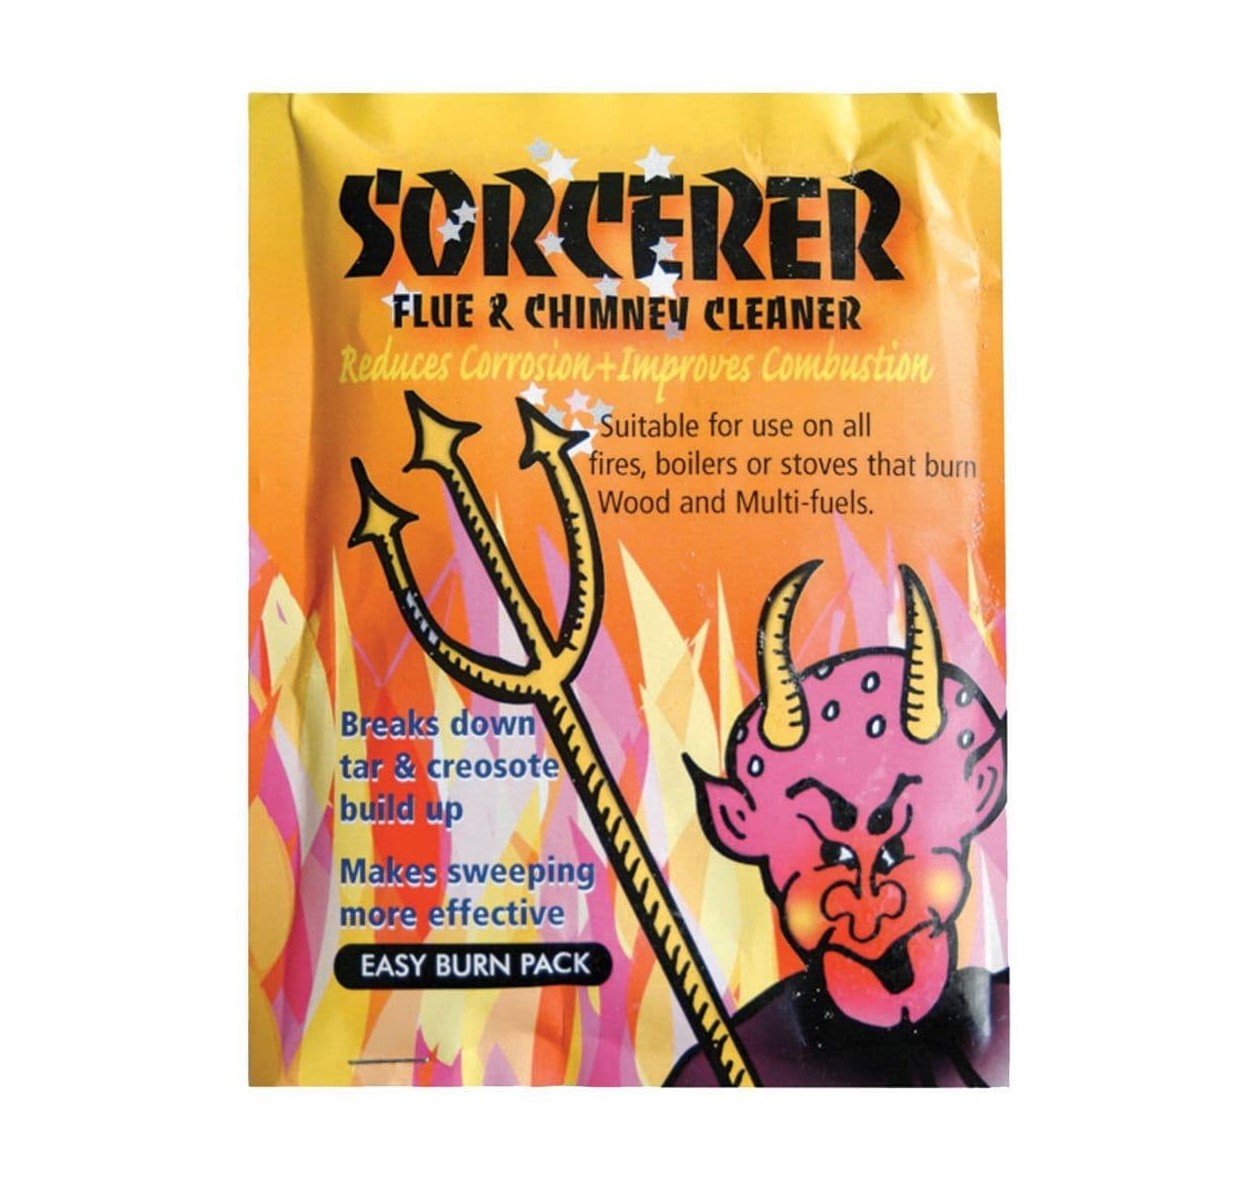 The Sorcerer Flue & Chimney Cleaner